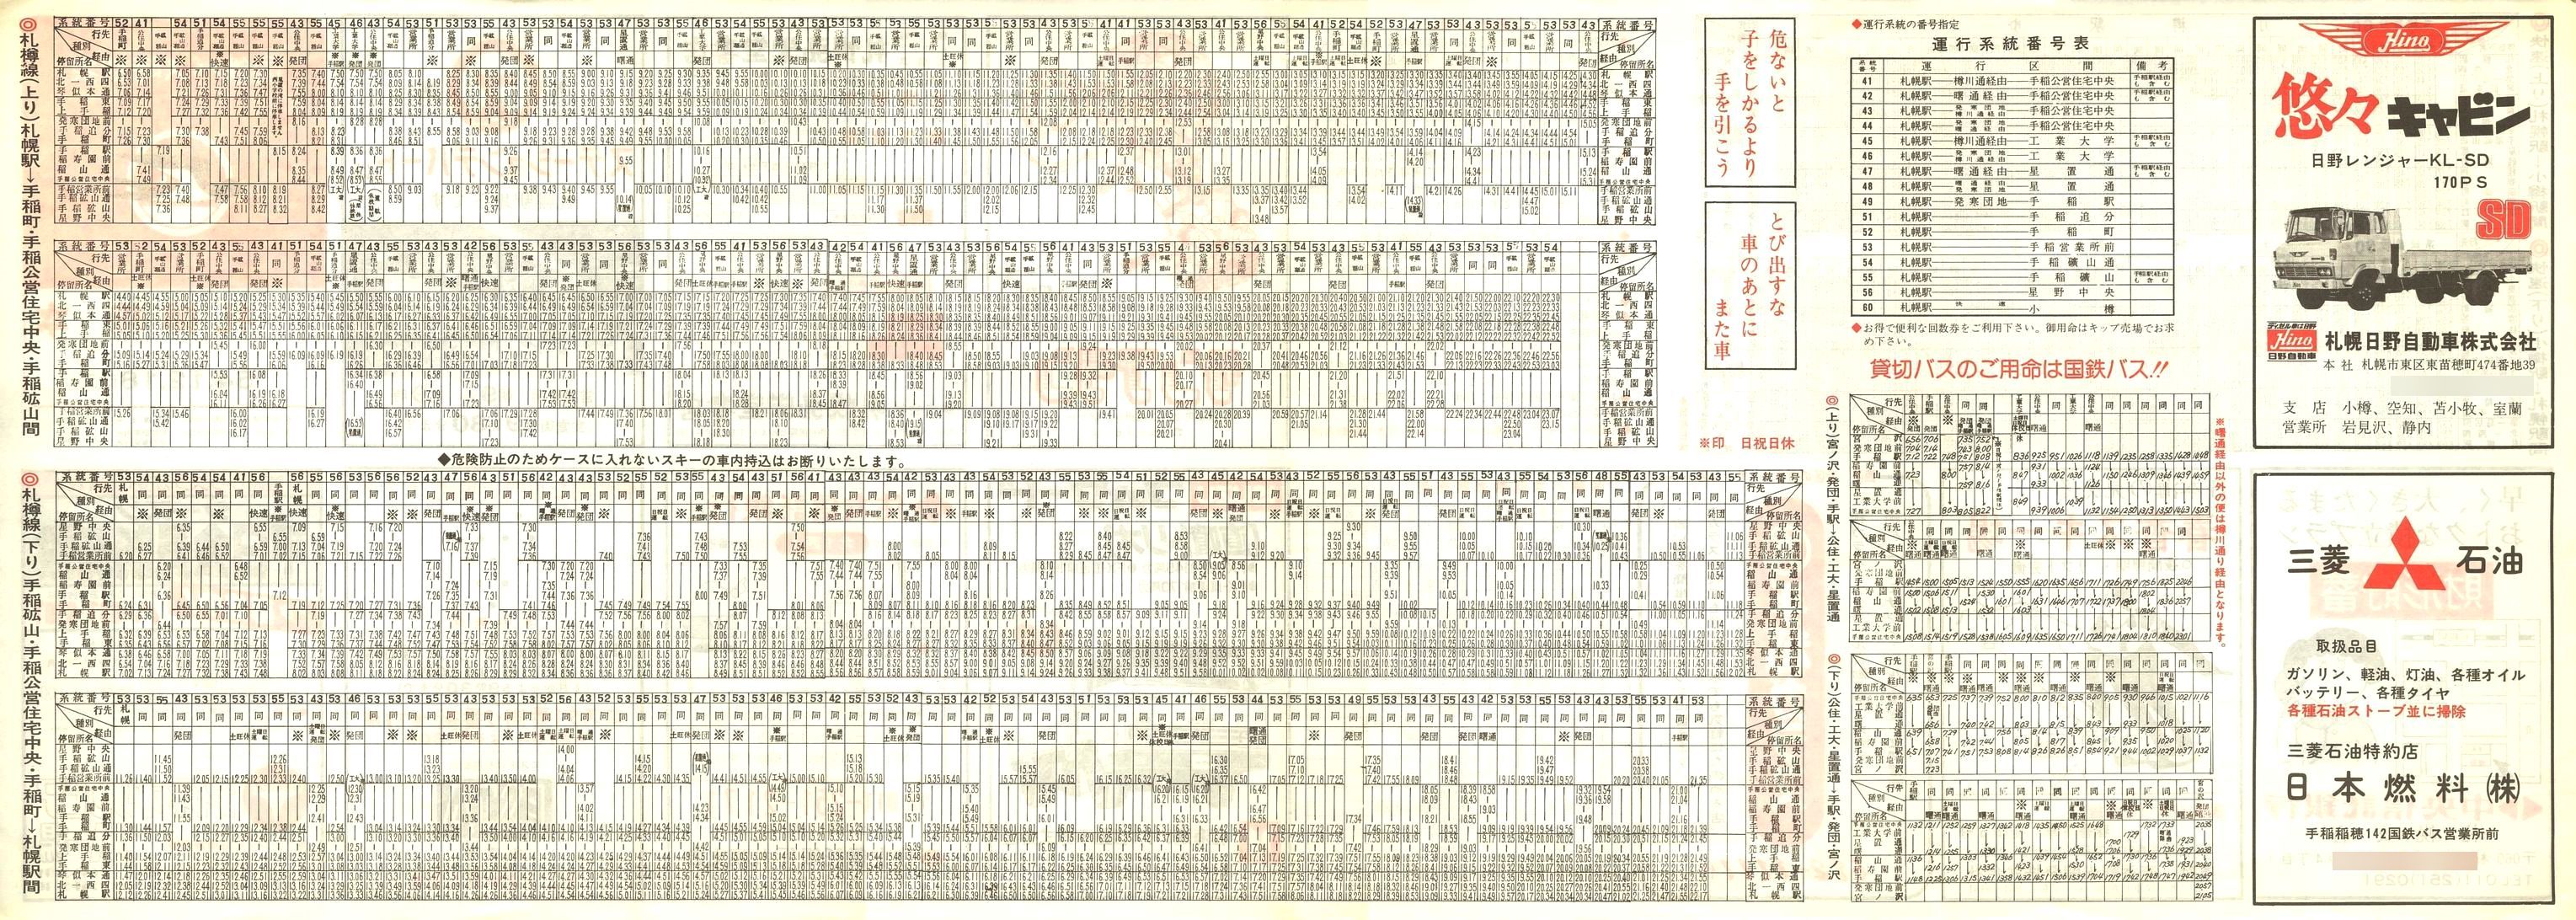 1979-12-18改正_国鉄バス_札樽線時刻表裏面